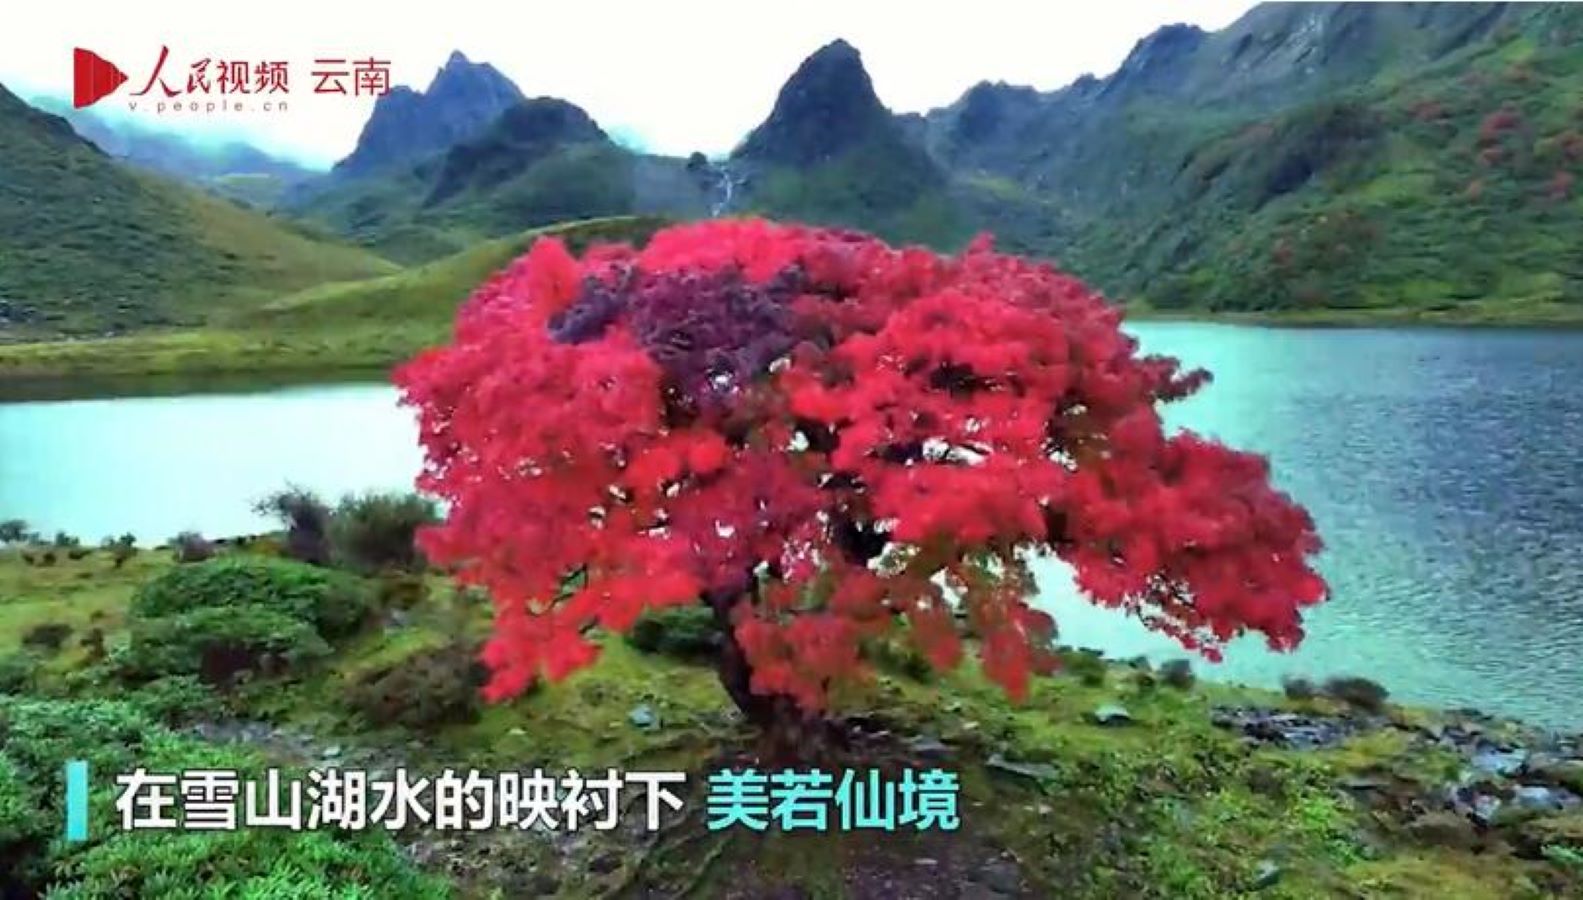 من عجائب الطبيعة.. شجرة بأوراق حمراء قانية
